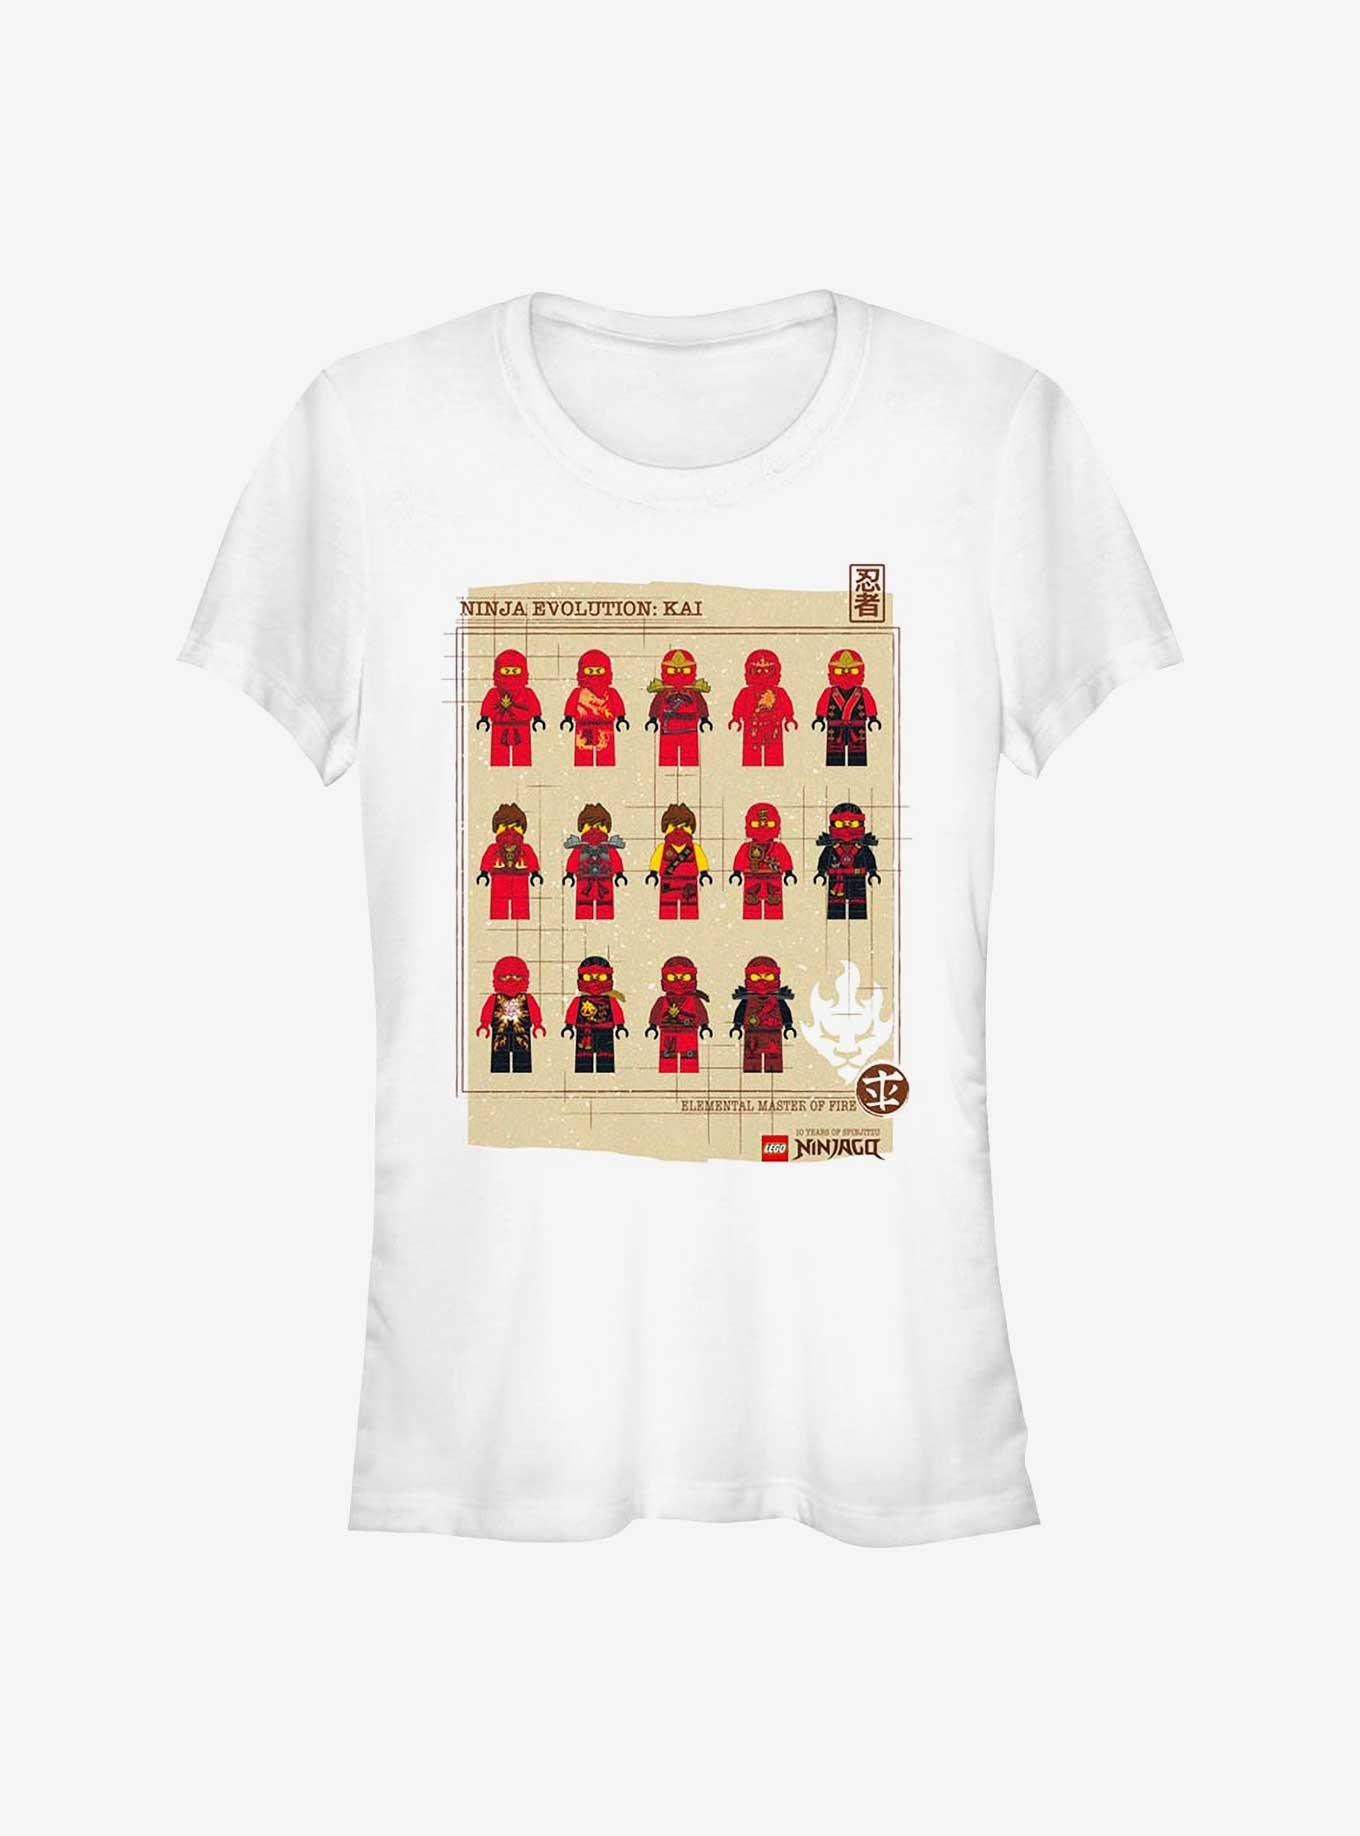 Lego Ninjago Ninja Evolution Girls T-Shirt